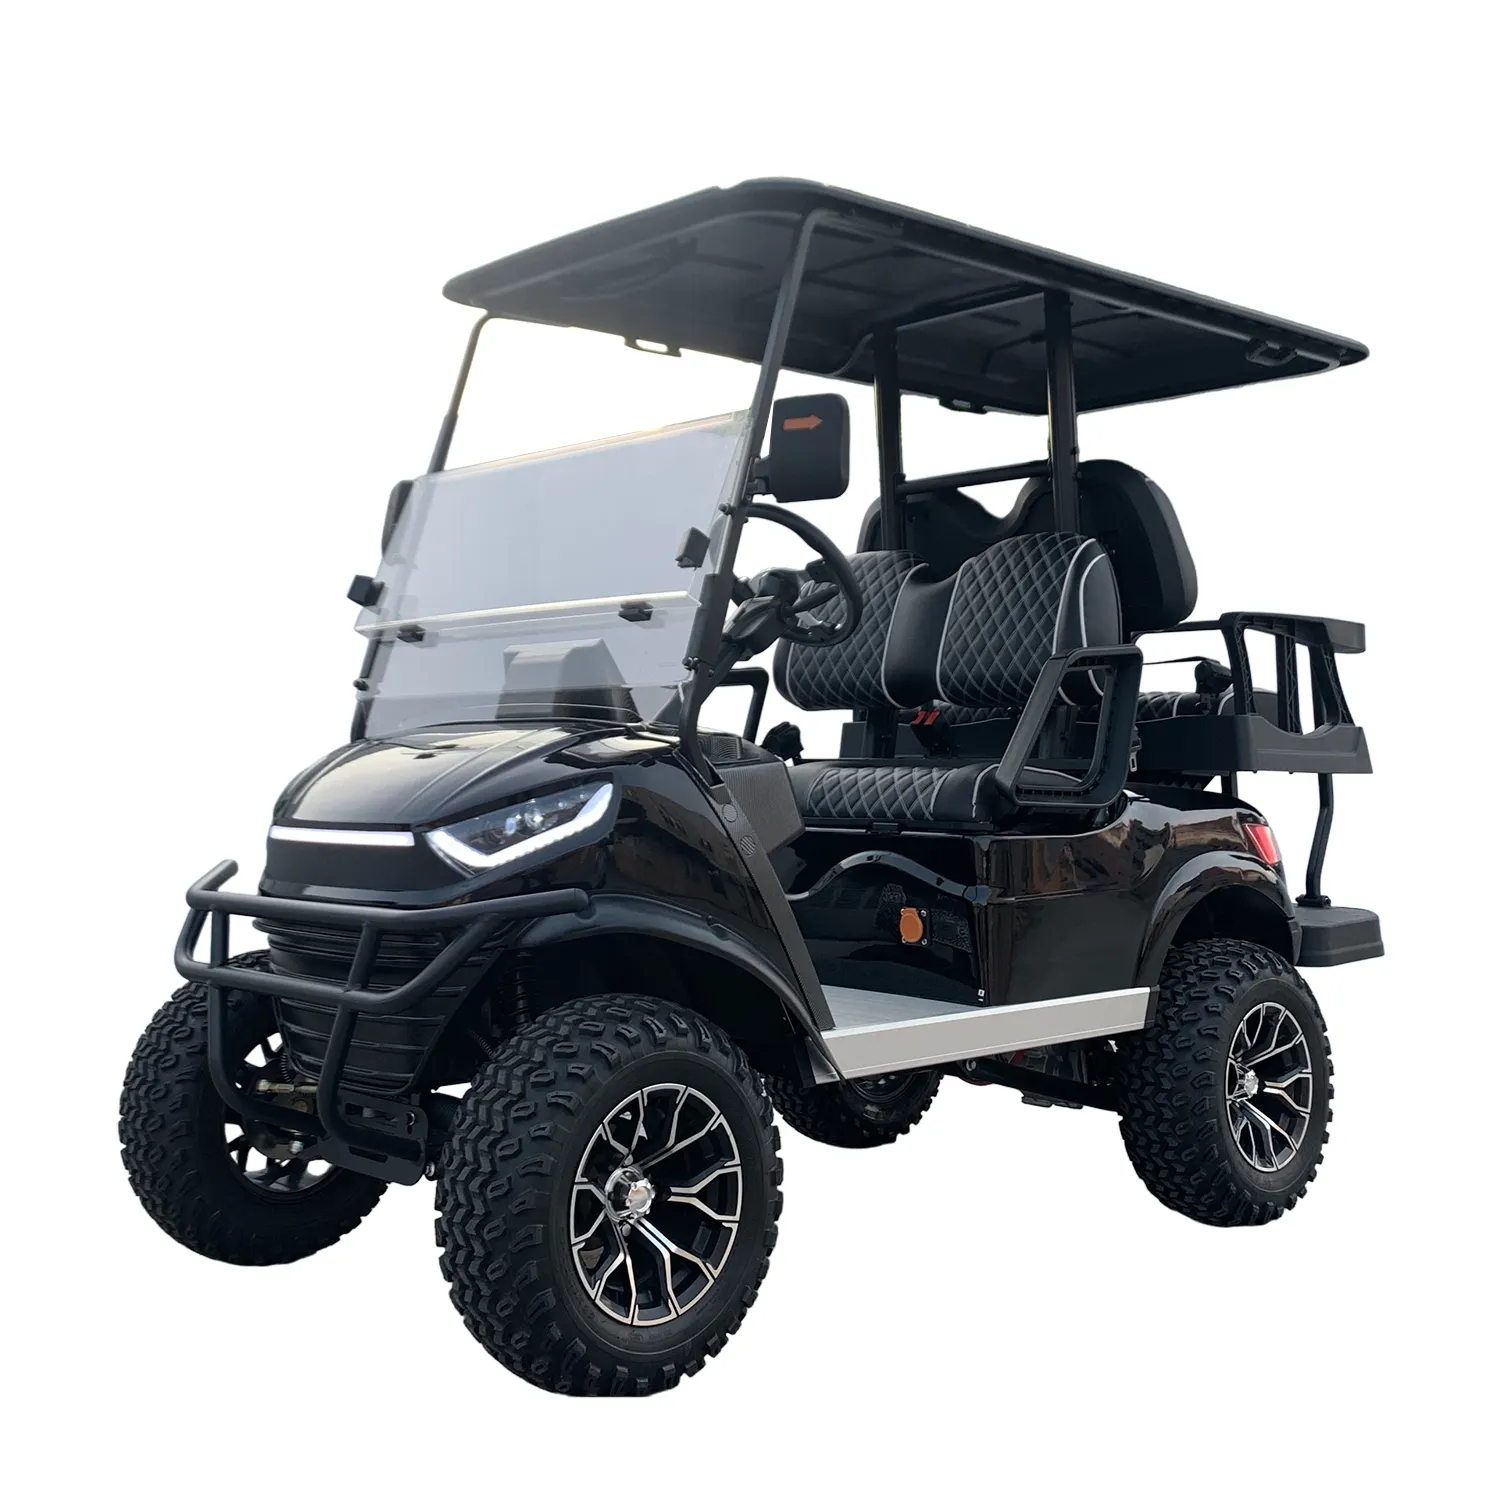 Rosa usa mercado MMC vintage solar 2 plazas 10 6 4 asiento 4 ruedas carrito de golf cuerpo hecho China calle legal